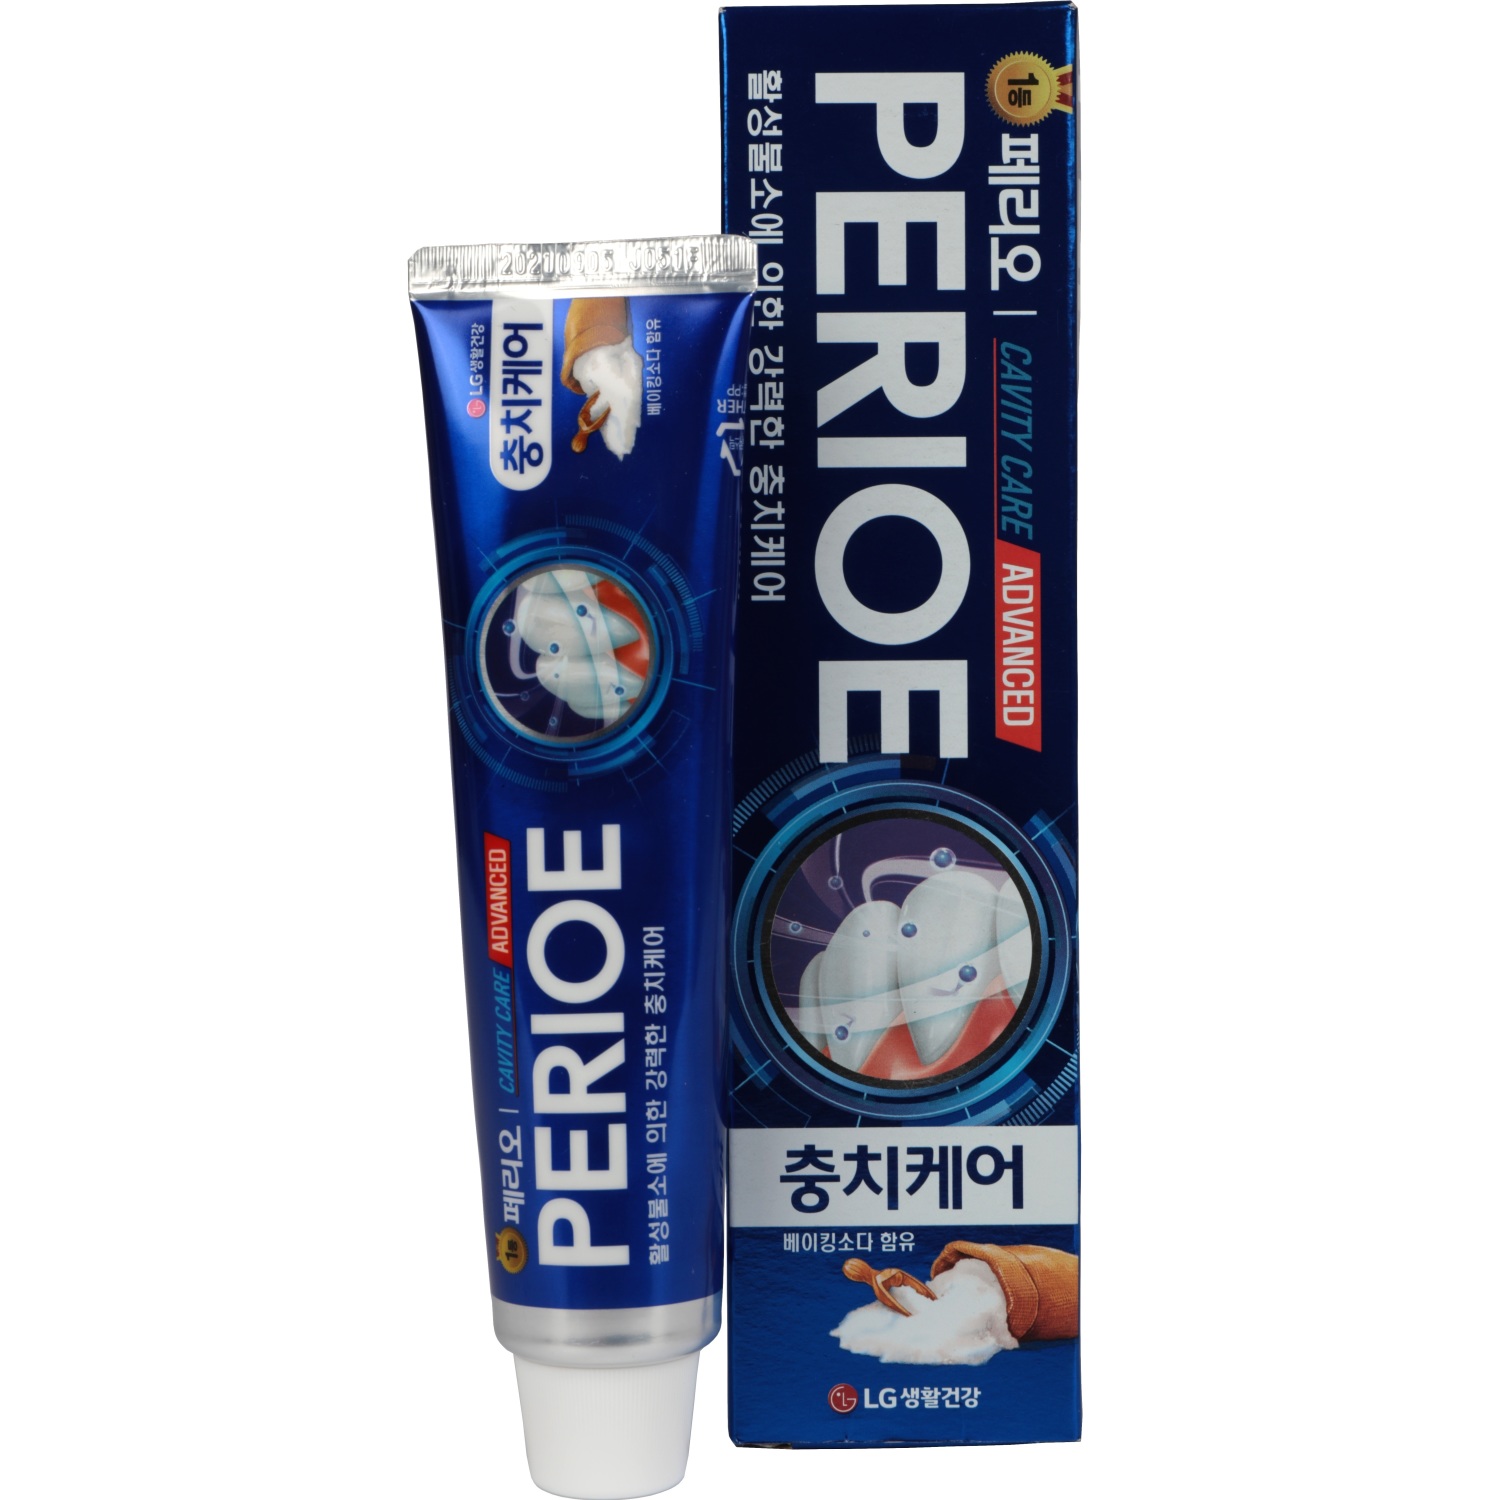 Зубная паста Perioe Cavity Care Advanced для эффективной борьбы с кариесом 130 г паста зубная spasta профилактика кариеса и воспаления десен 90мл